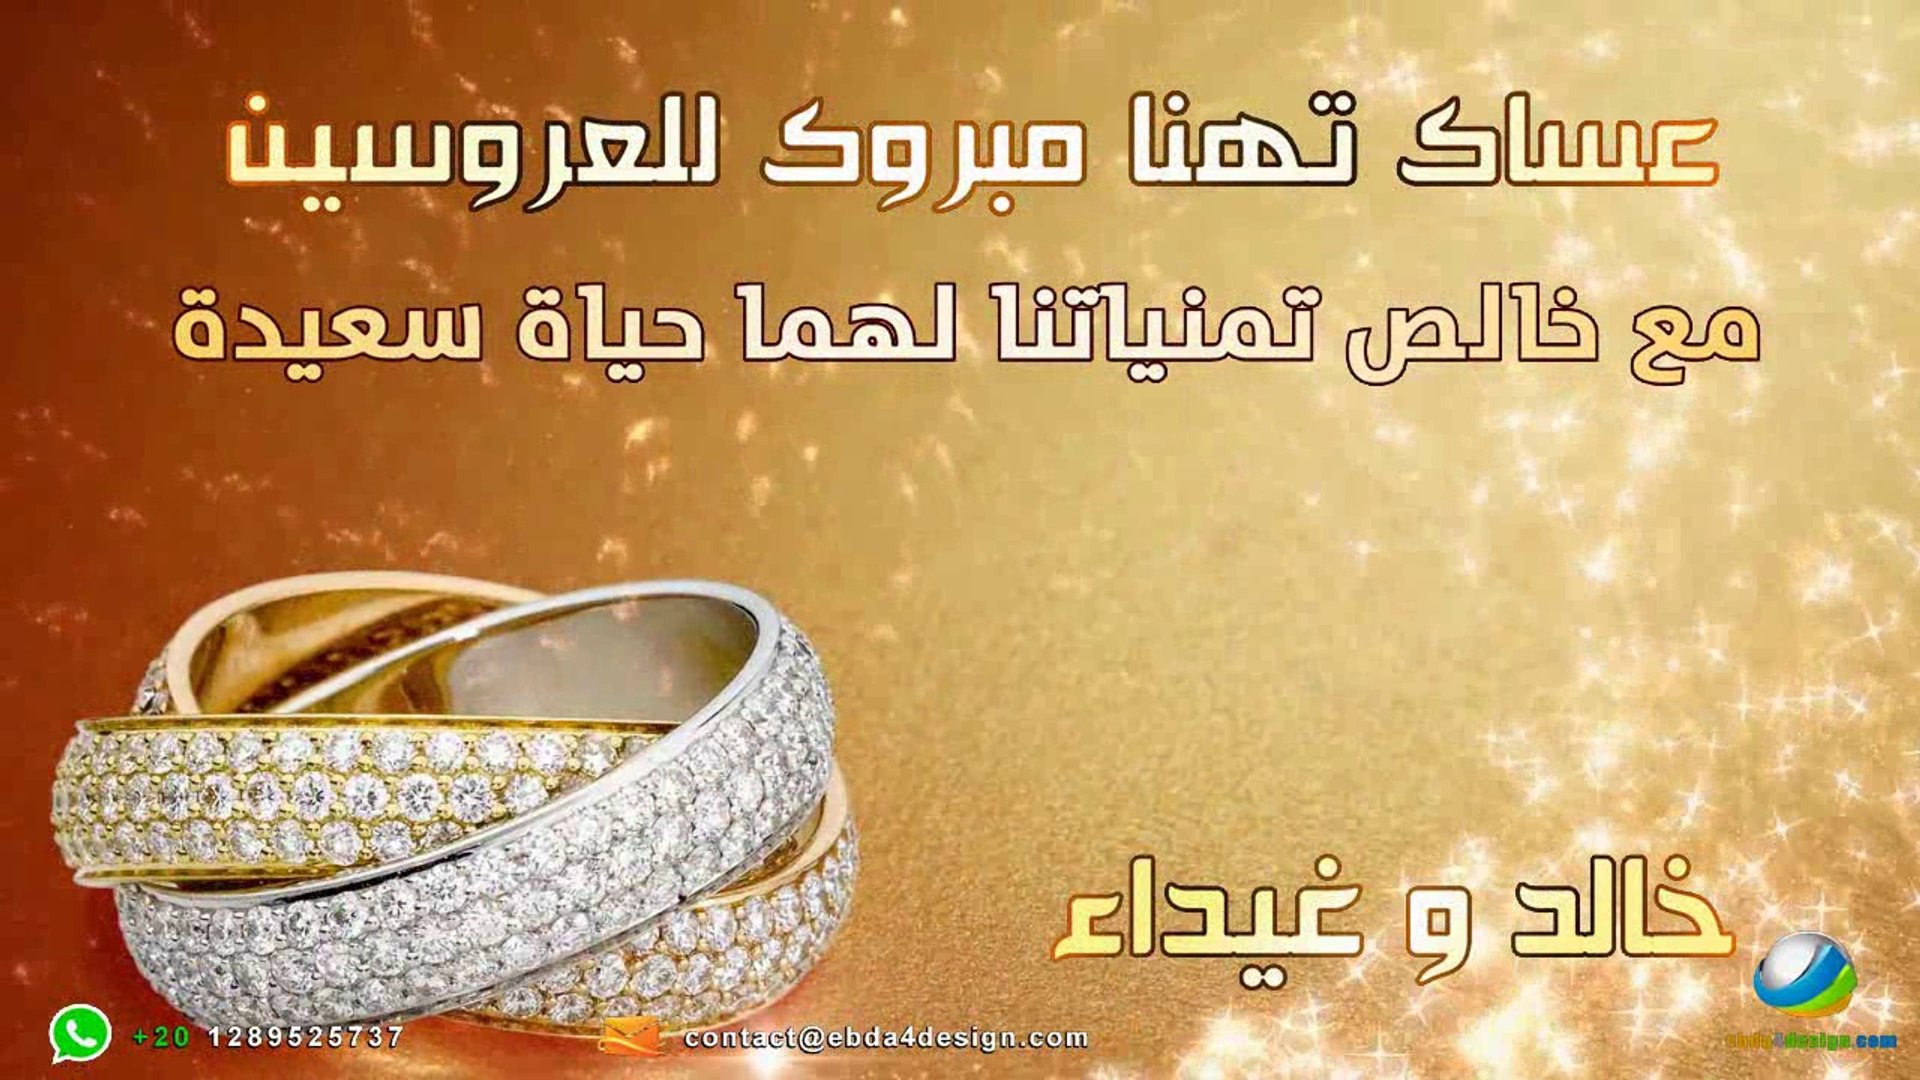 تصميم بطاقة دعوة زواج اليكترونية للواتس رووعه - فيديو Dailymotion